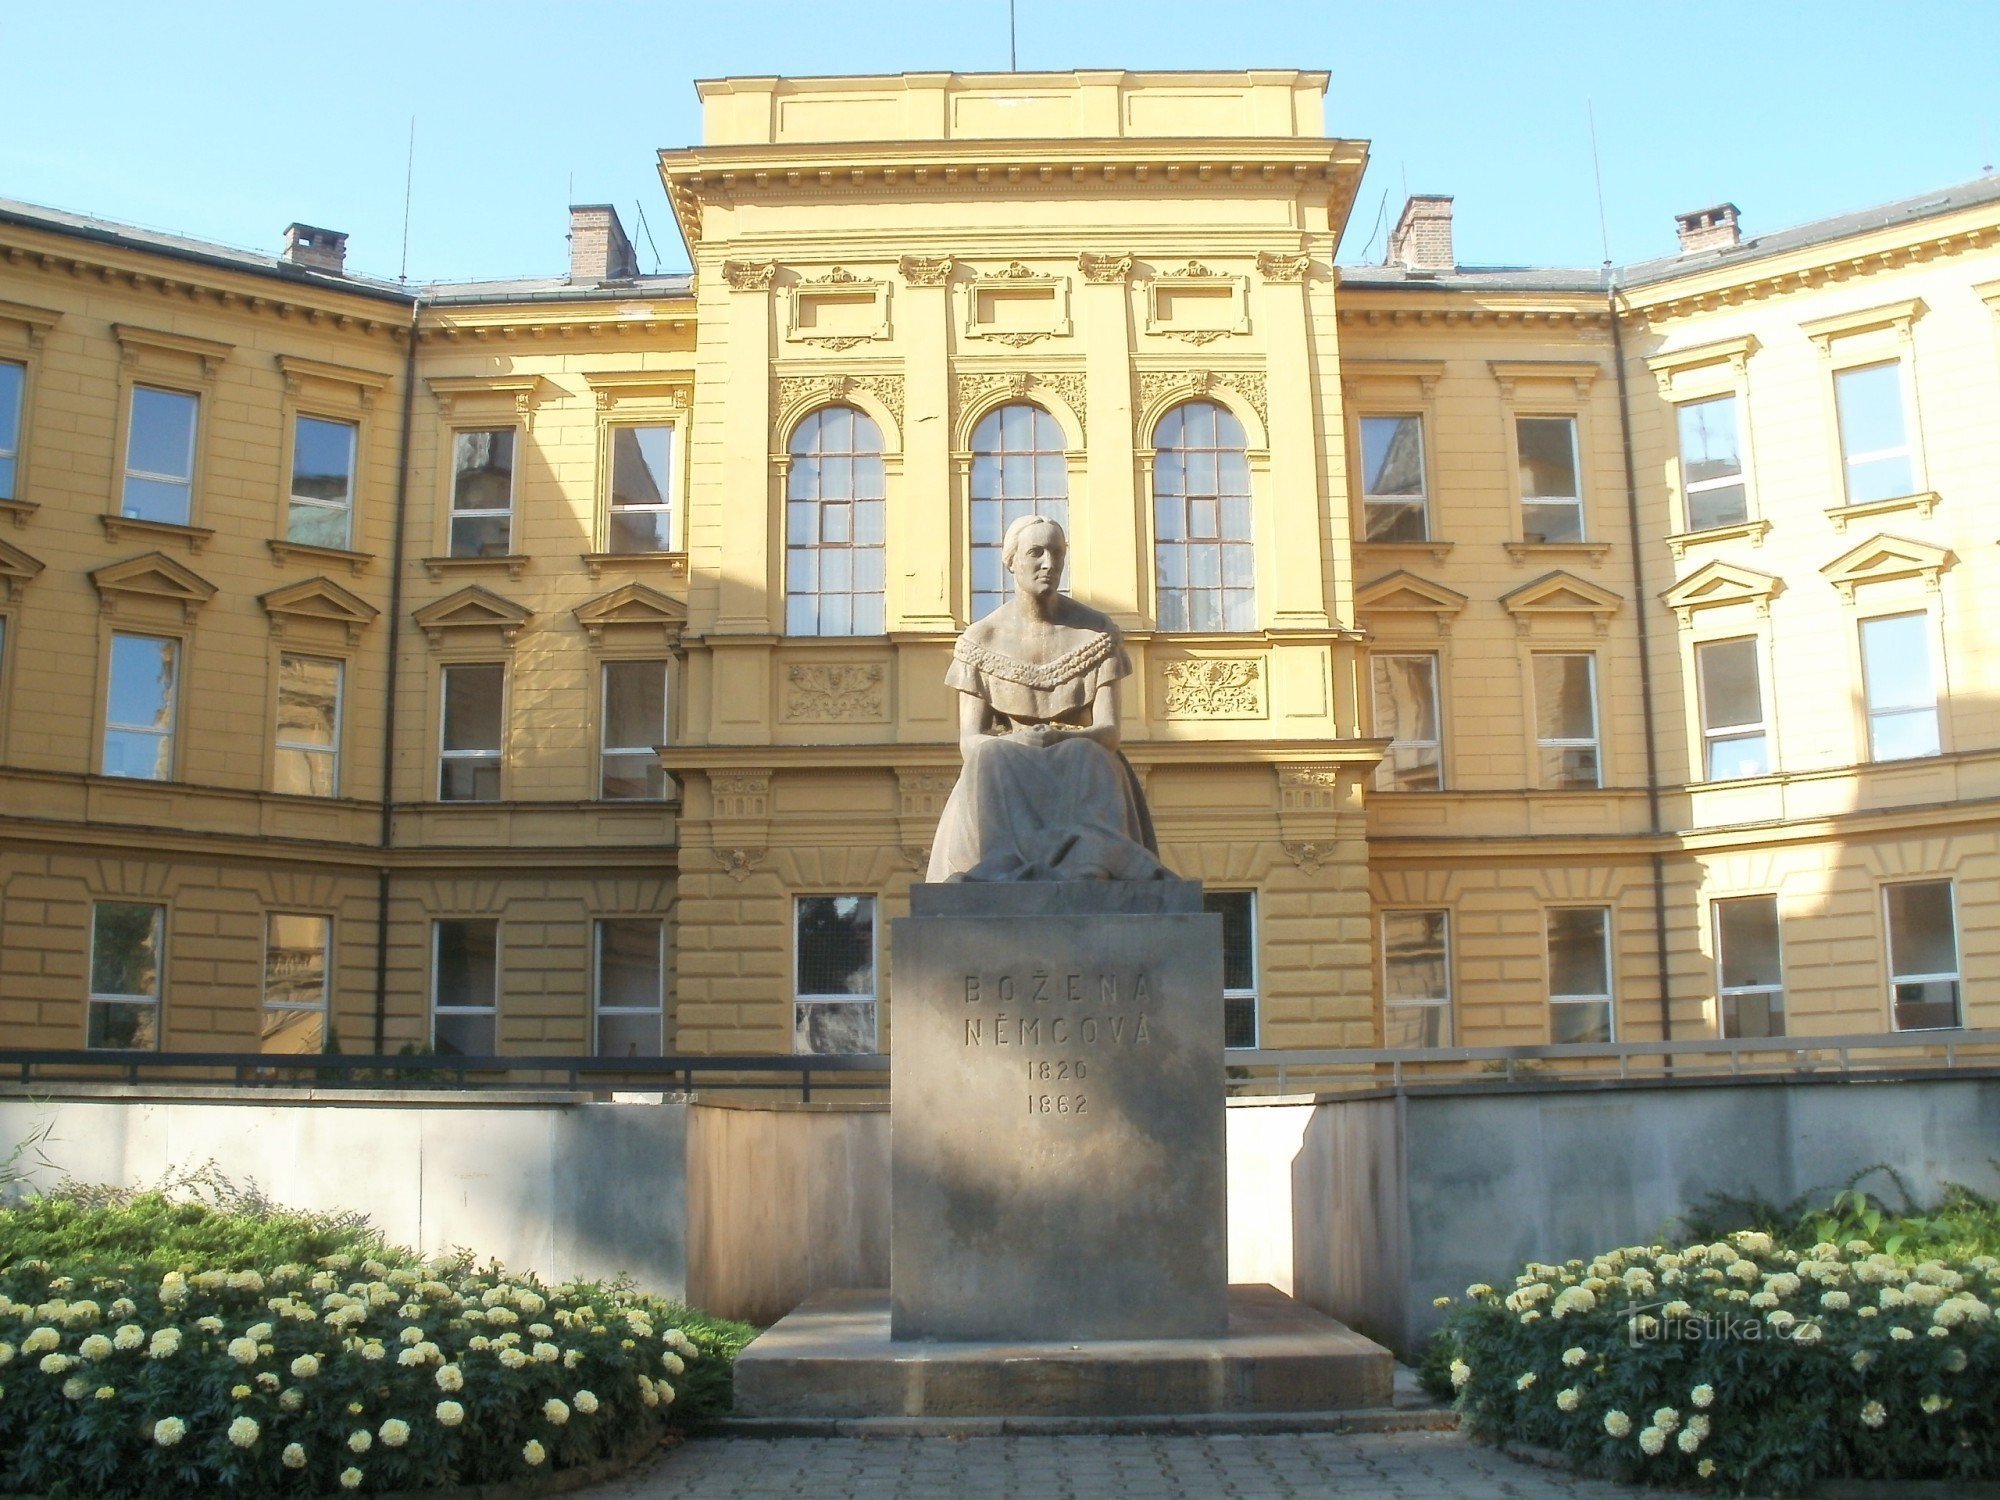 Hradec Králové - statuia lui Božena Němcová